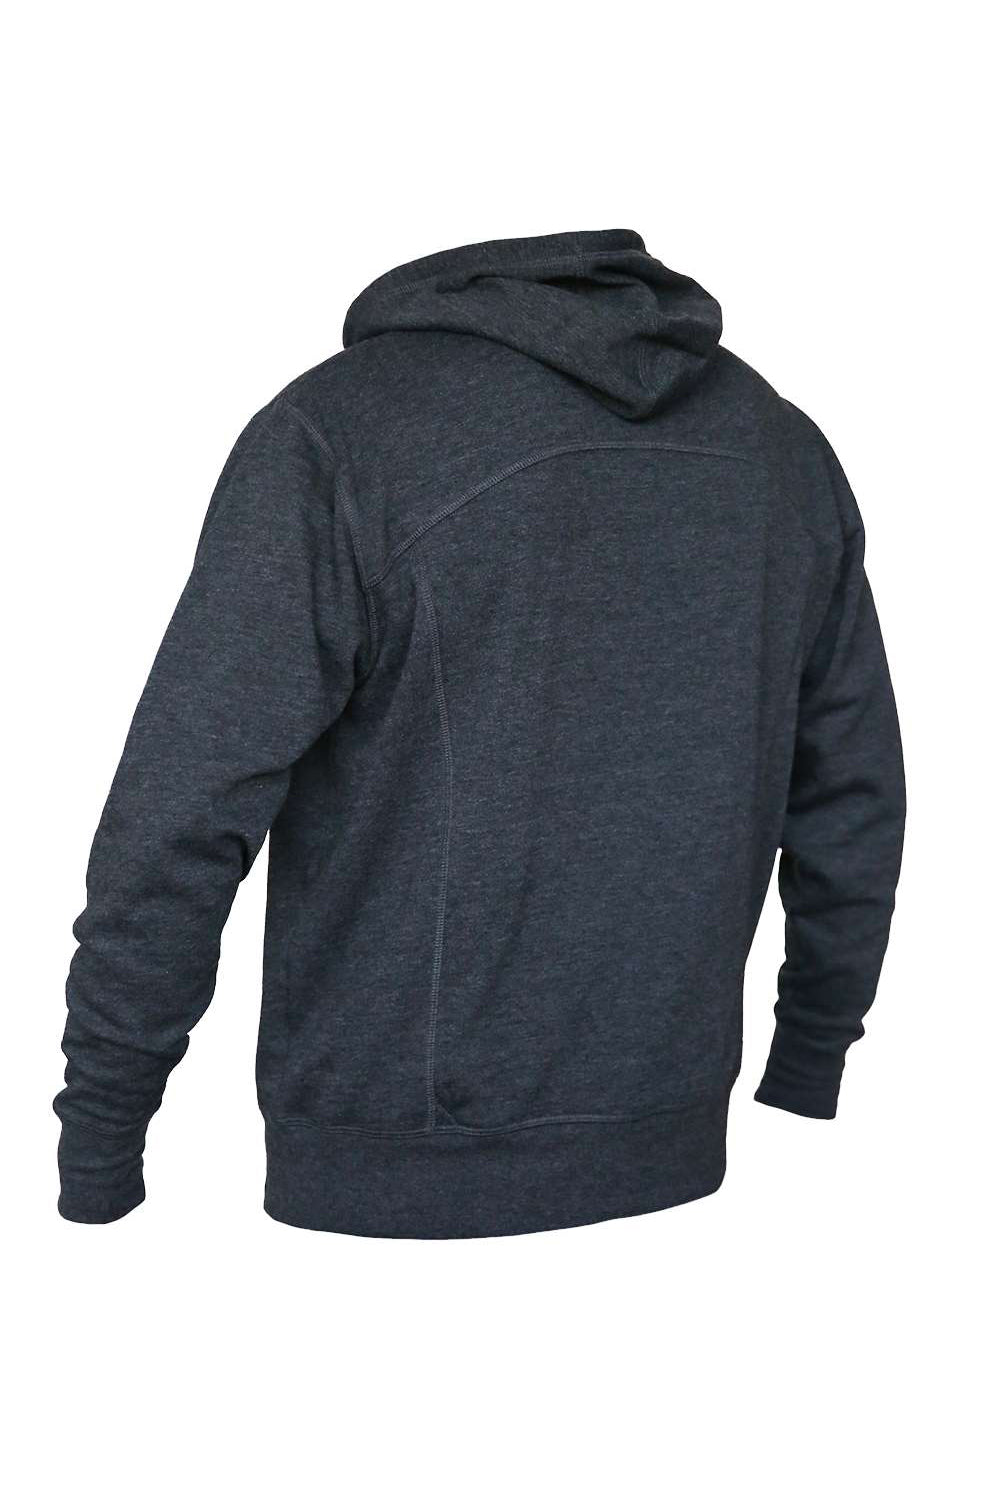 Quikflip LAFZH Mens 2-in-1 Hero Lite Full Zip Hooded Sweatshirt Hoodie Charcoal Grey Flat Back